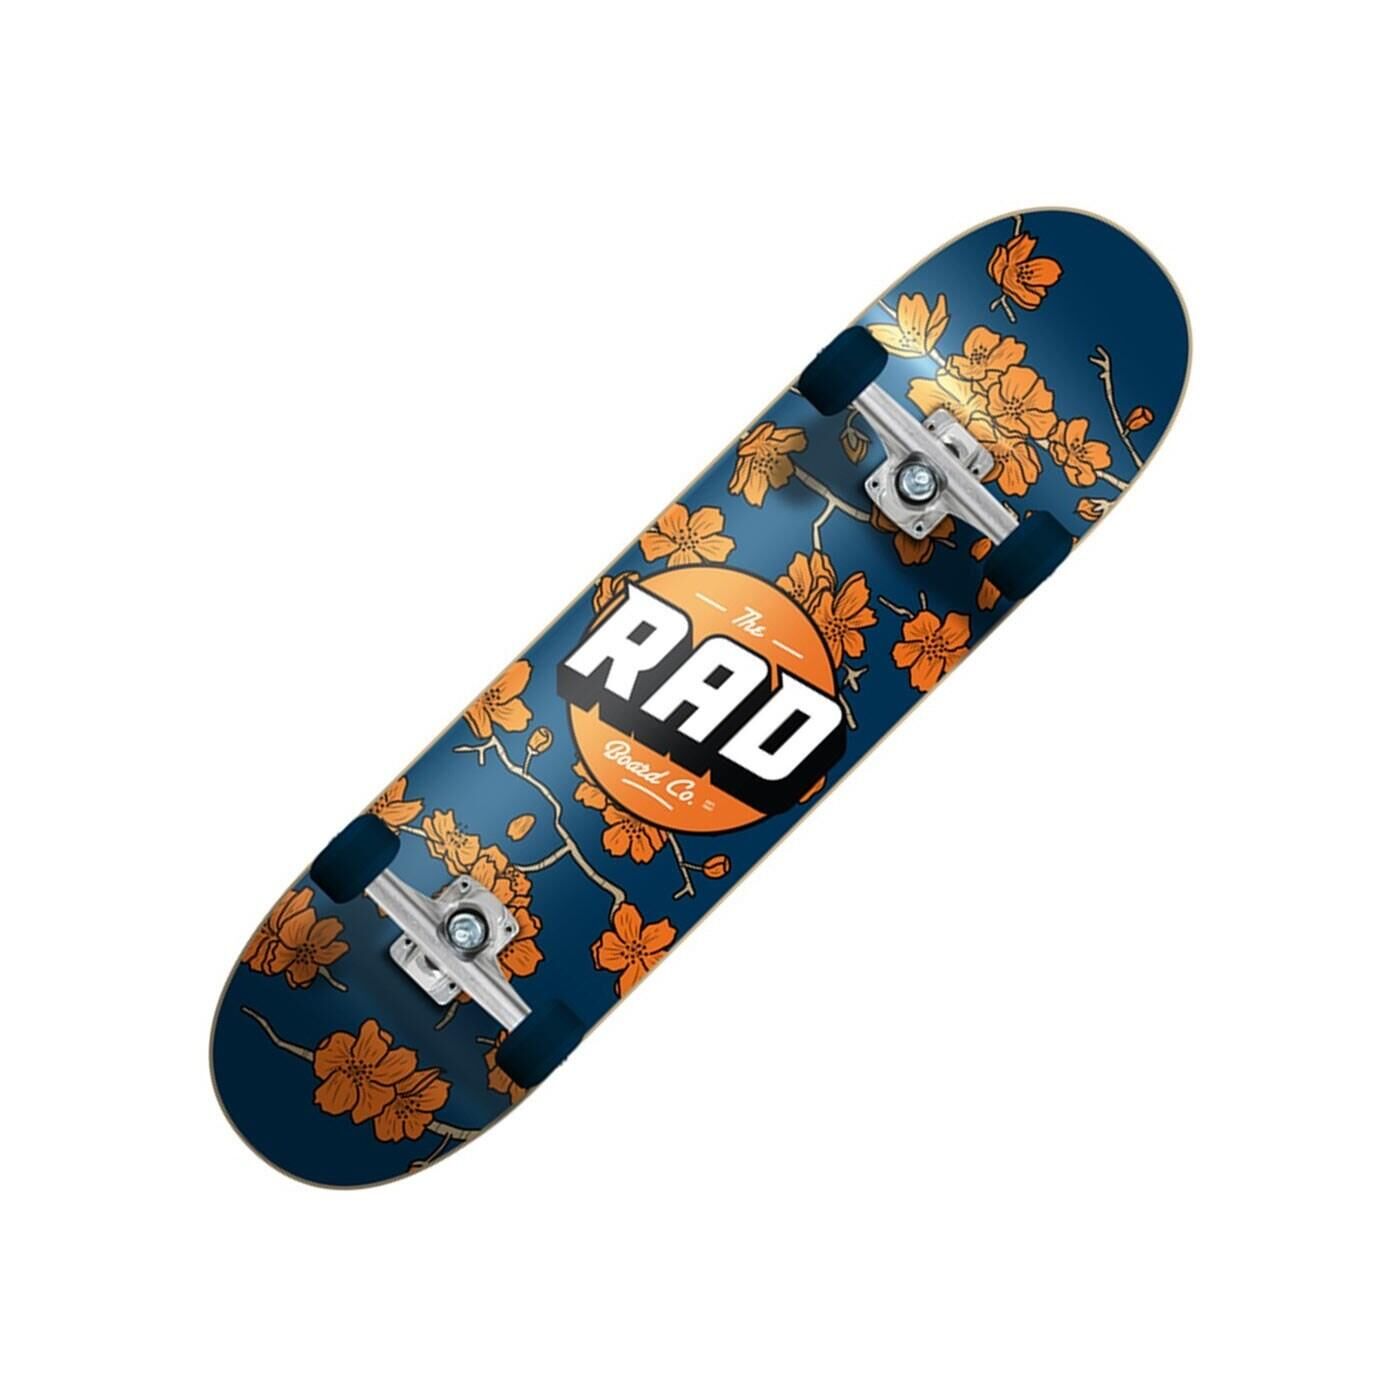 RAD BOARD CO. Cherry Blossom Dude Crew 7.5inch Complete Skateboard